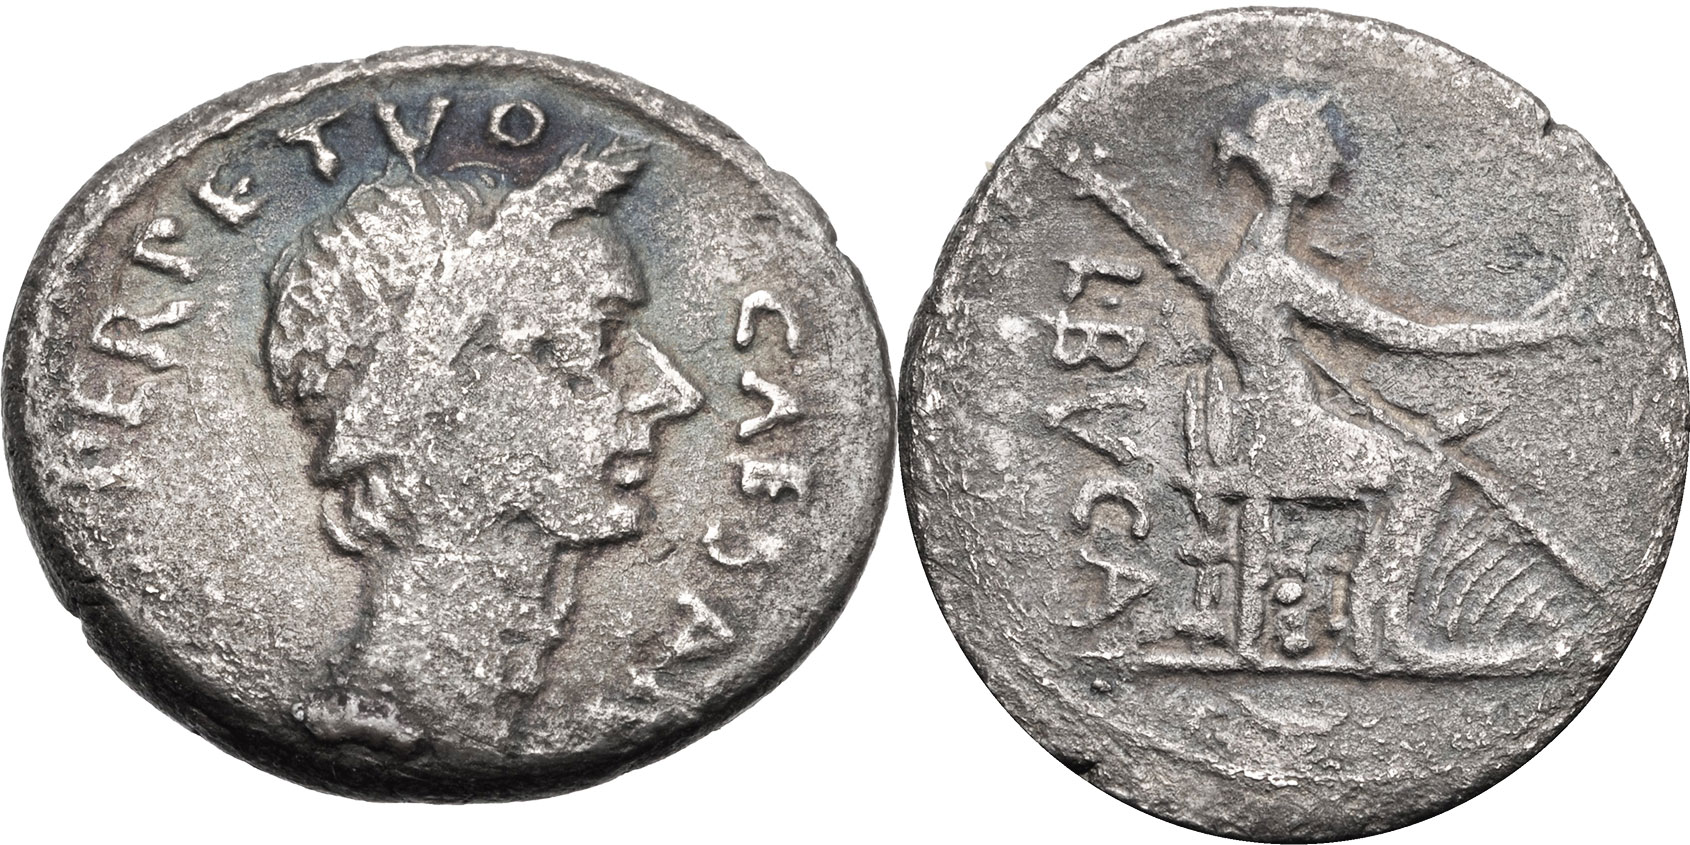 44 год до н э. Римские монеты с изображением Цезаря. Монеты римских императриц.